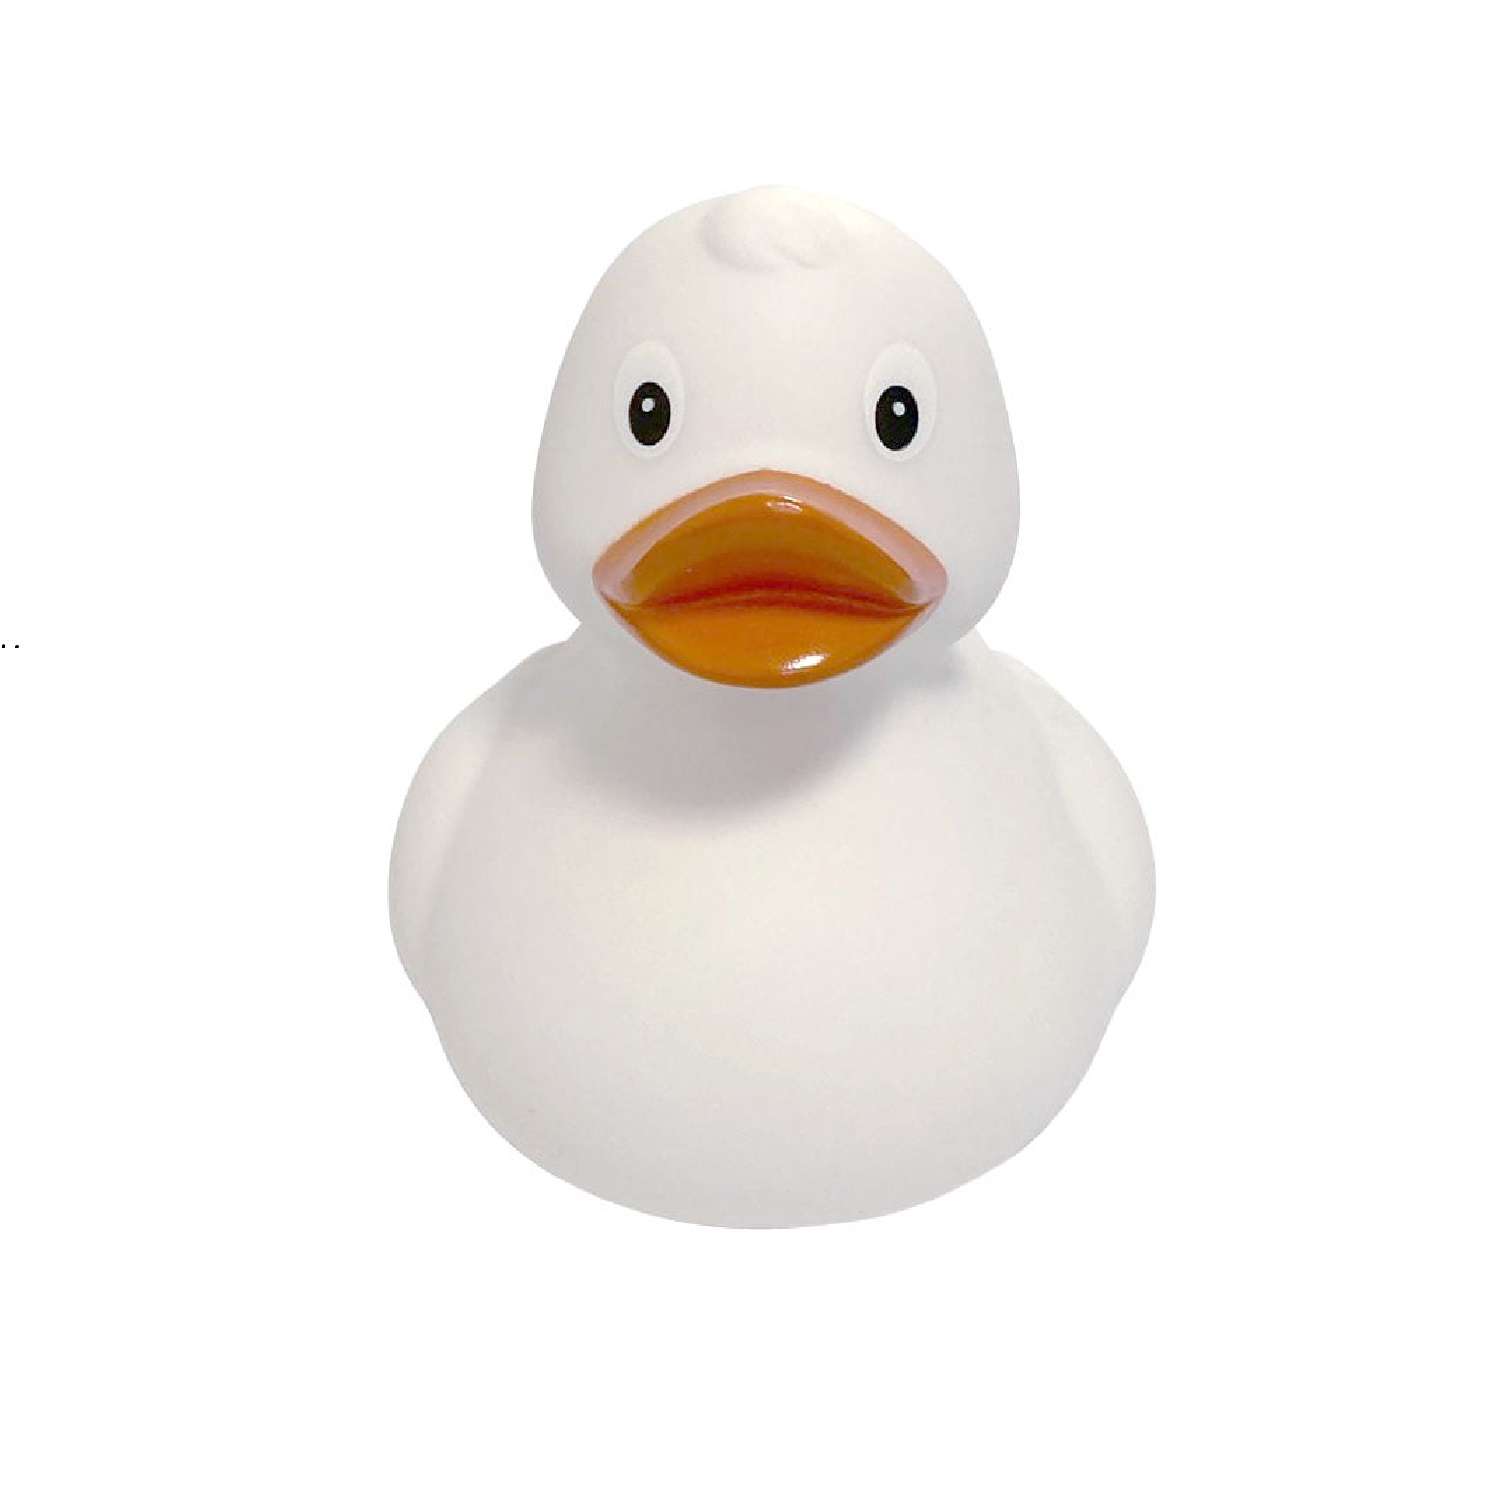 Игрушка Funny ducks для ванной Белая уточка 1303 - фото 2